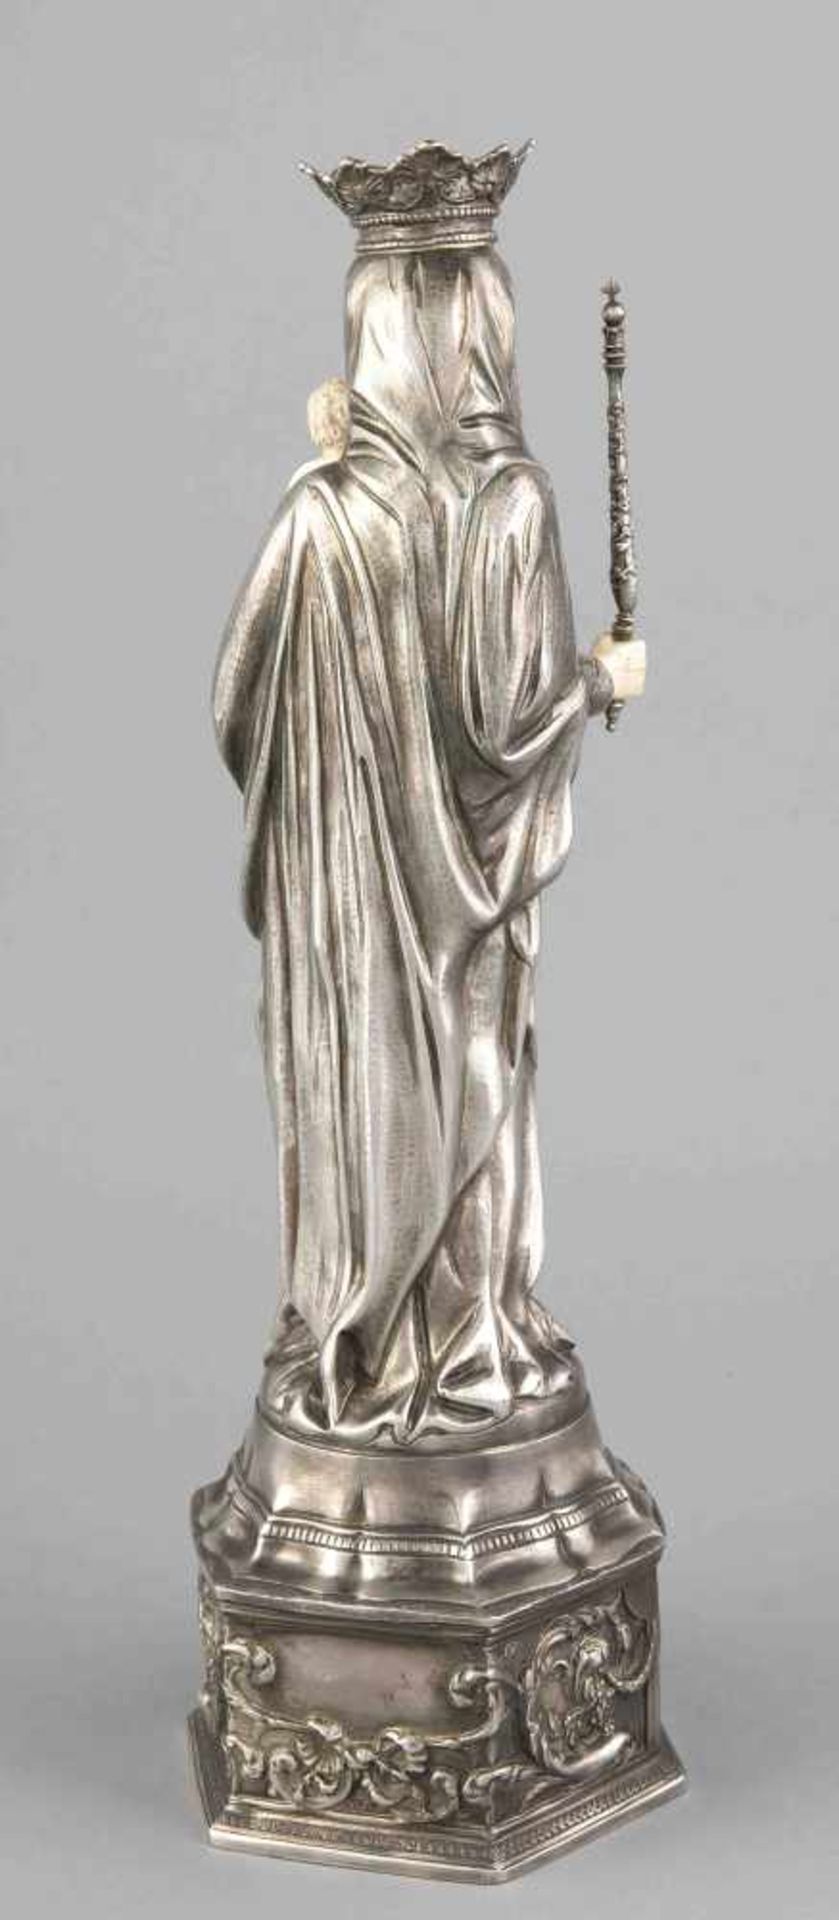 Historismus-Madonna mit Elfenbeineinlagen, Deutsch, um 1900, Silber 800/000, gotisierende Form, - Image 2 of 2